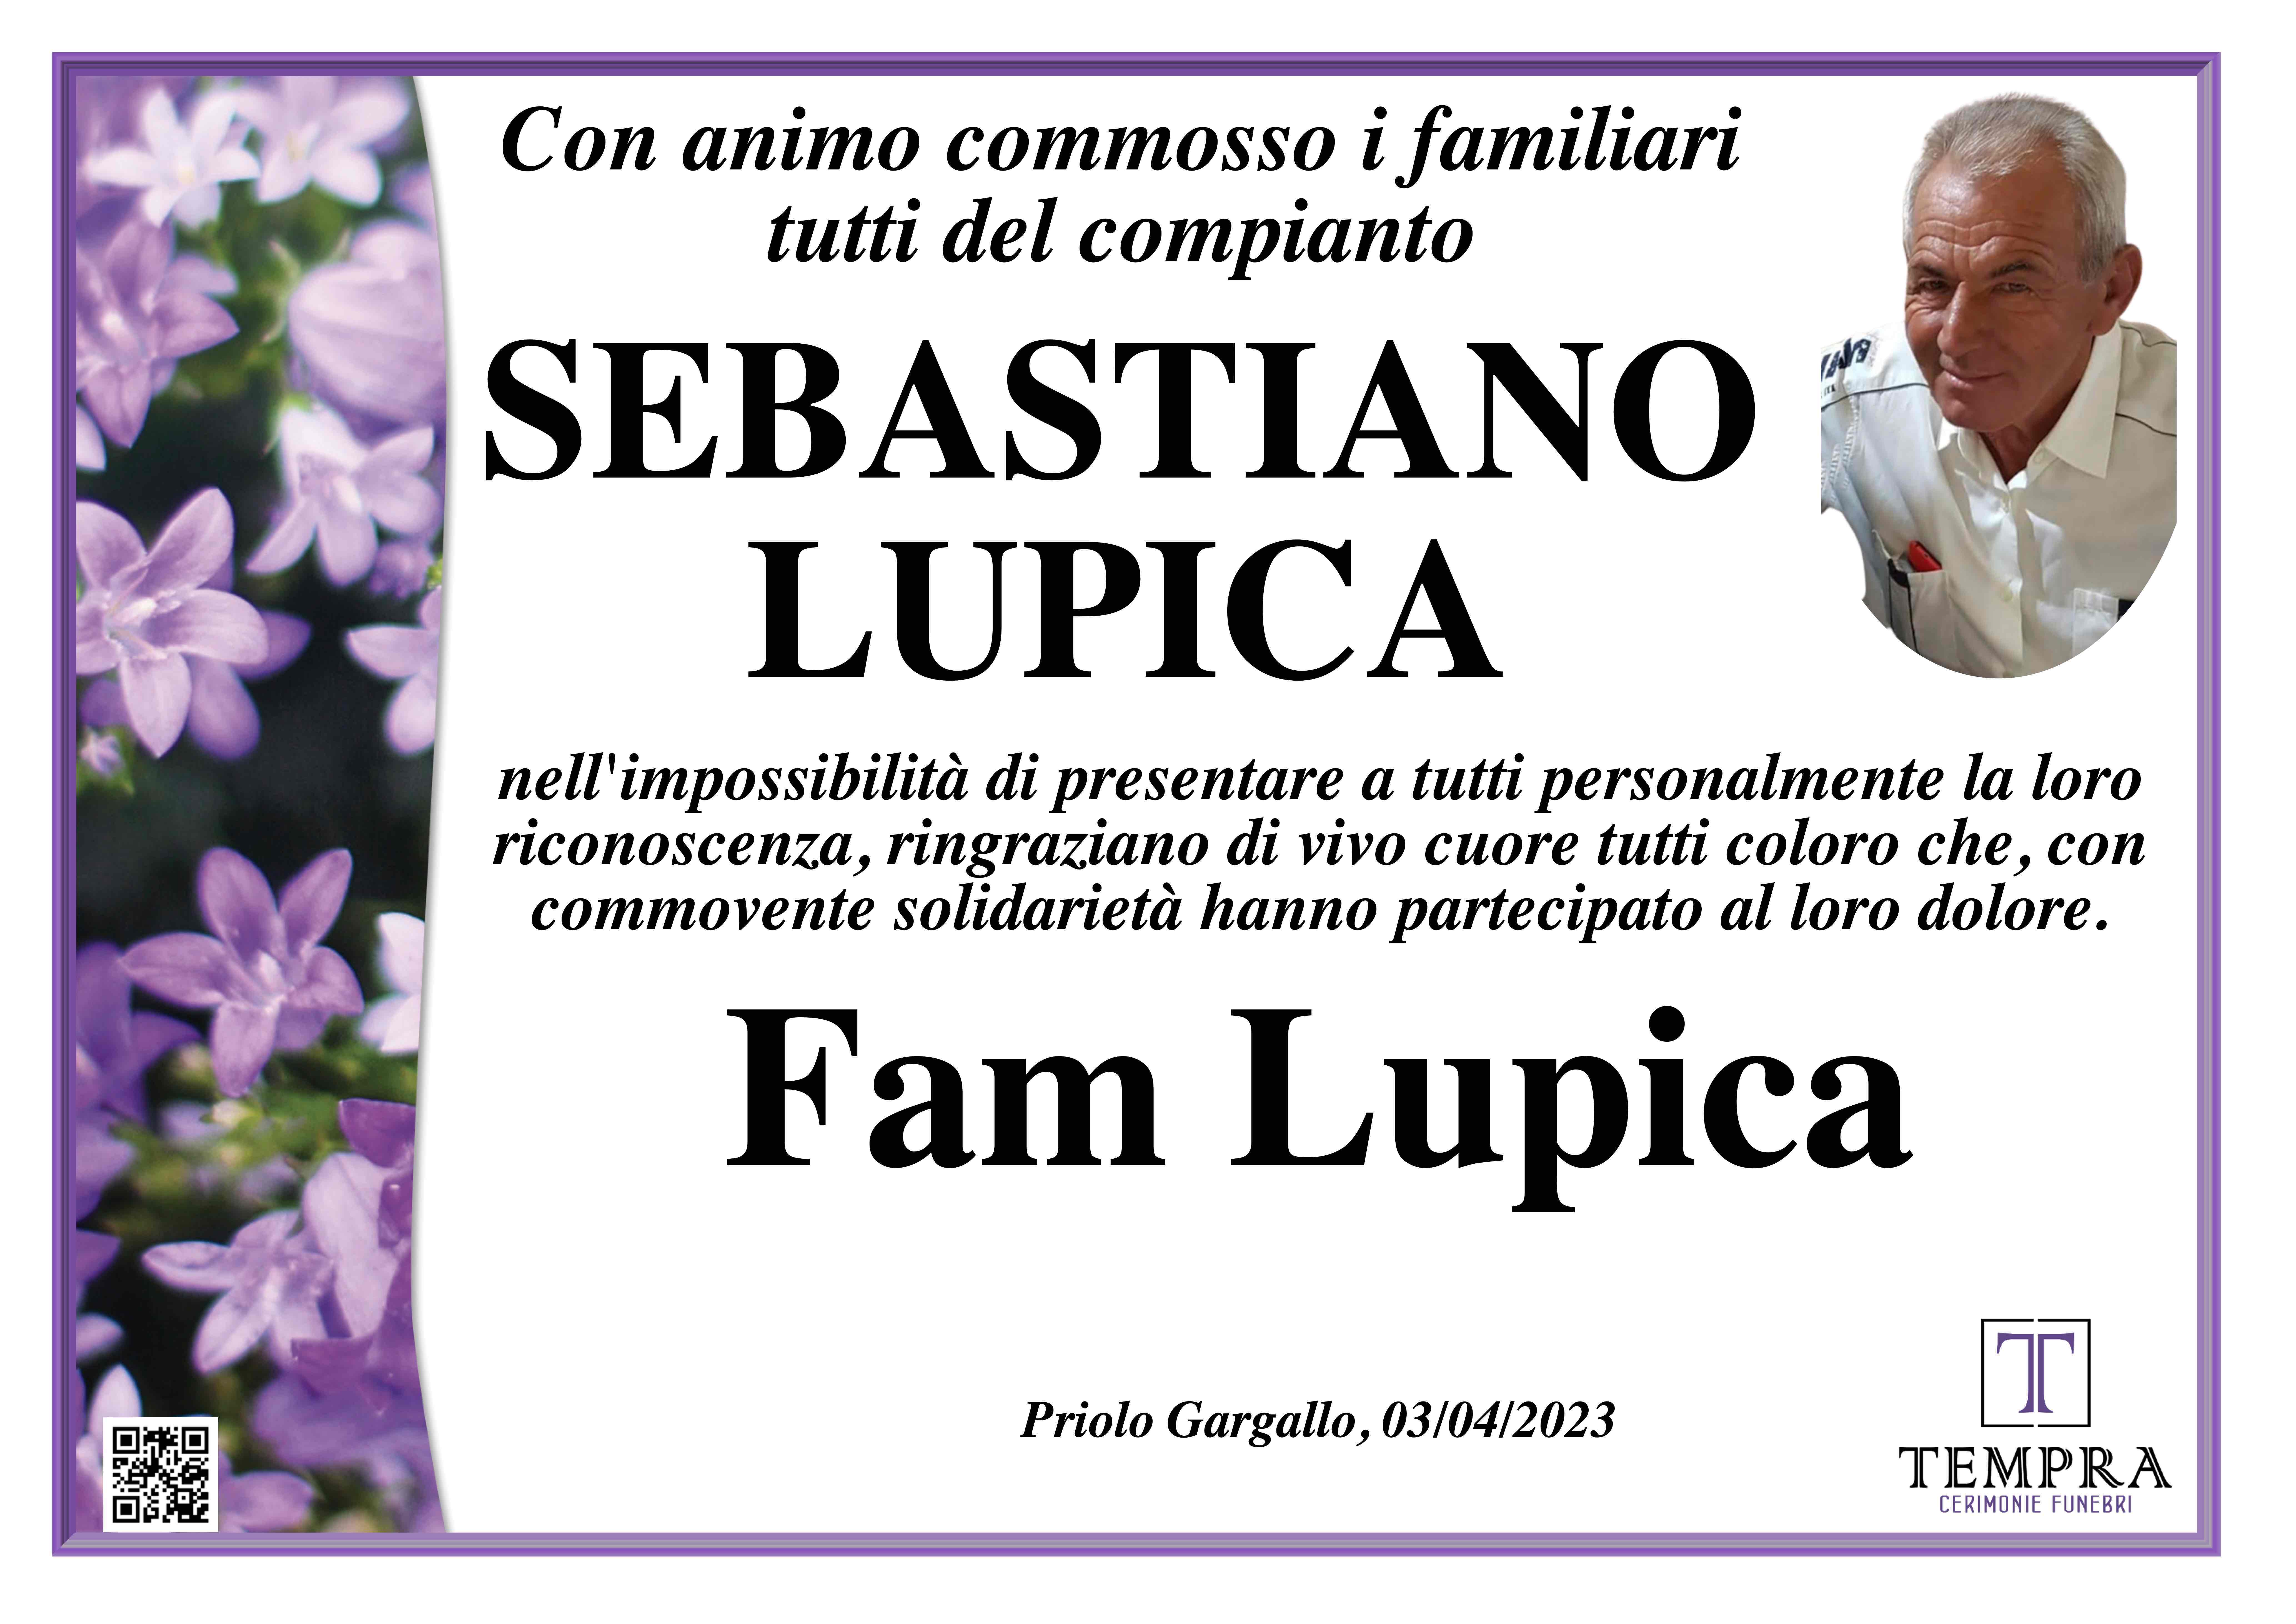 Sebastiano Lupica